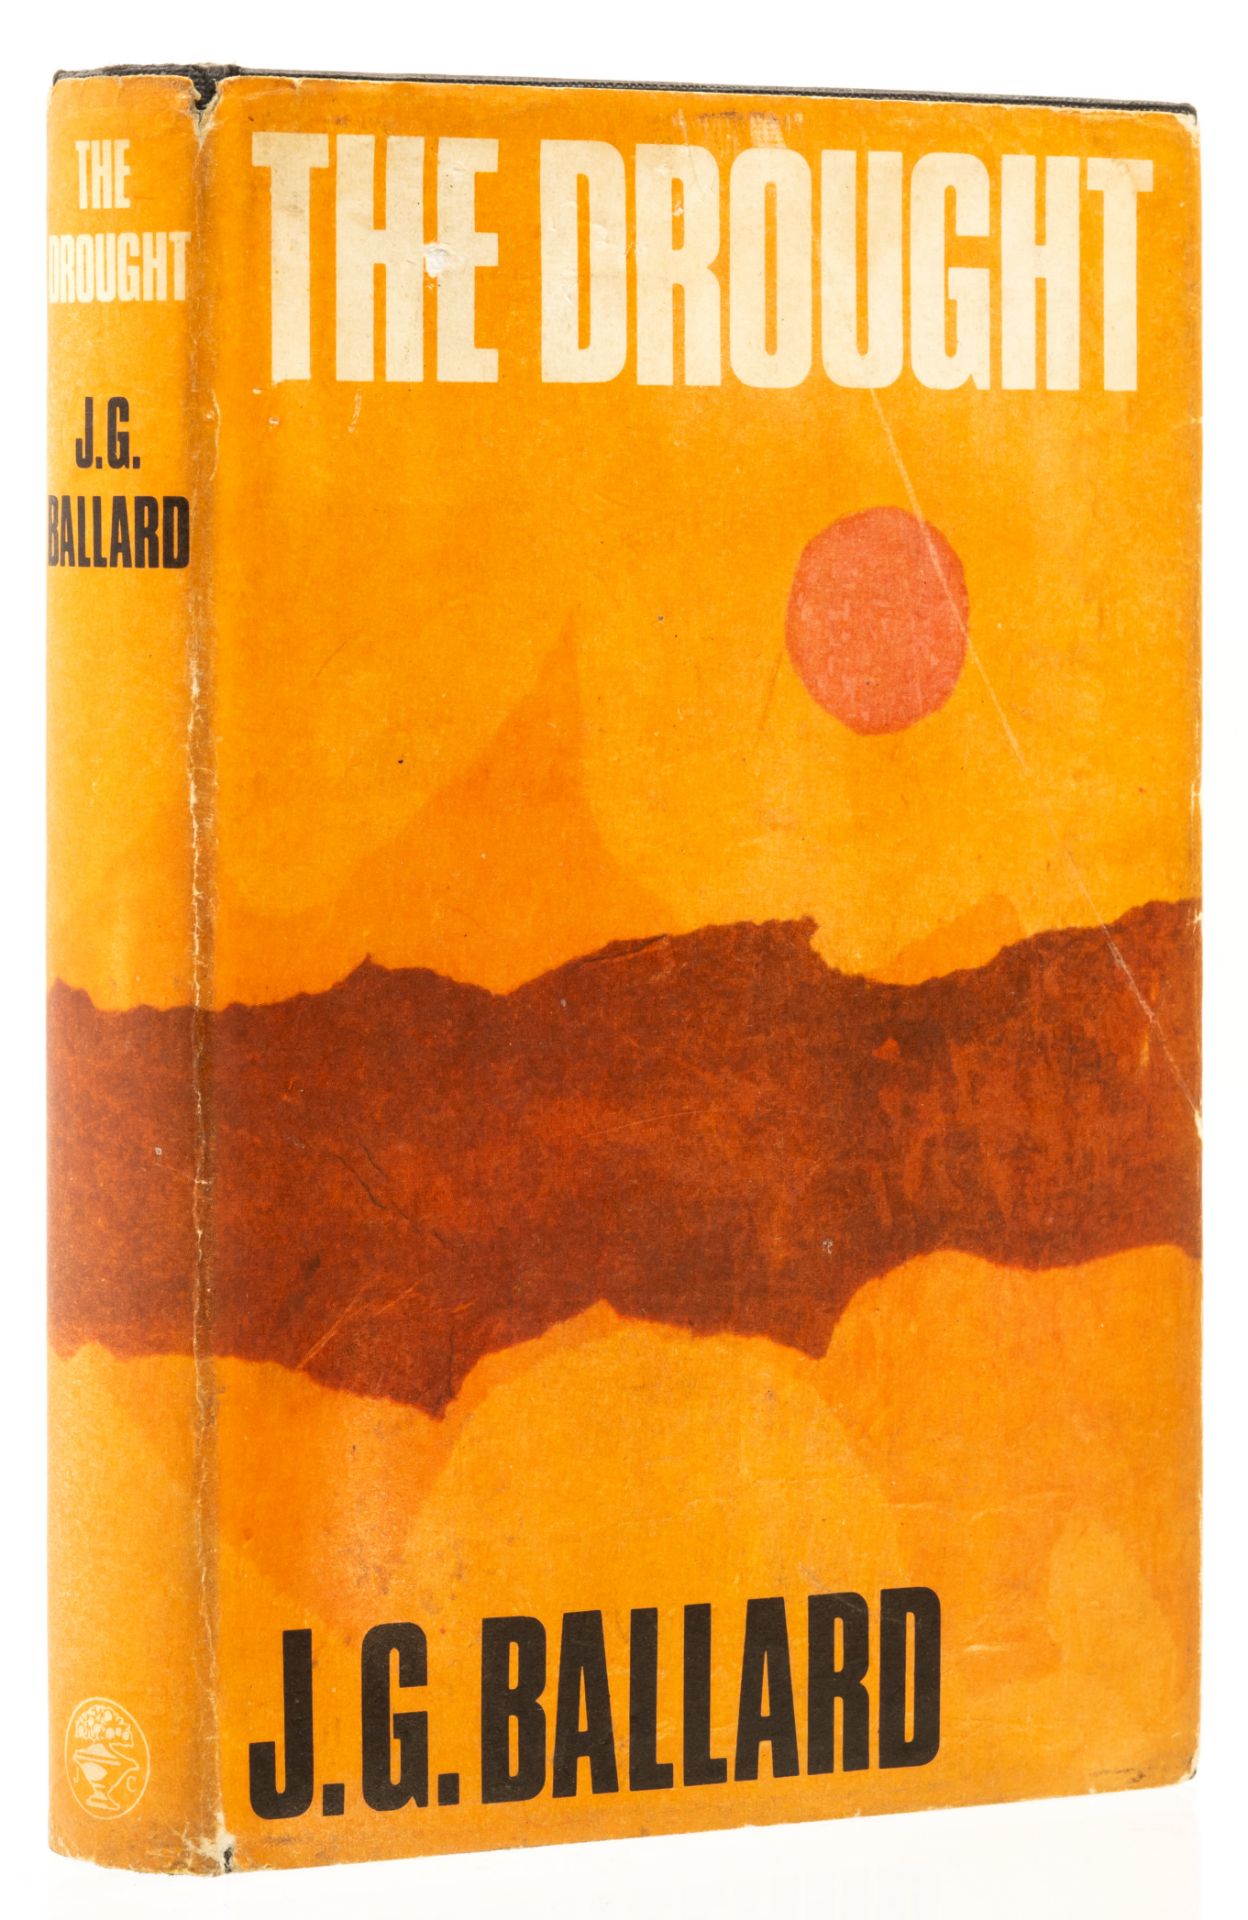 Ballard (J. G.) The Drought, first edition, 1965